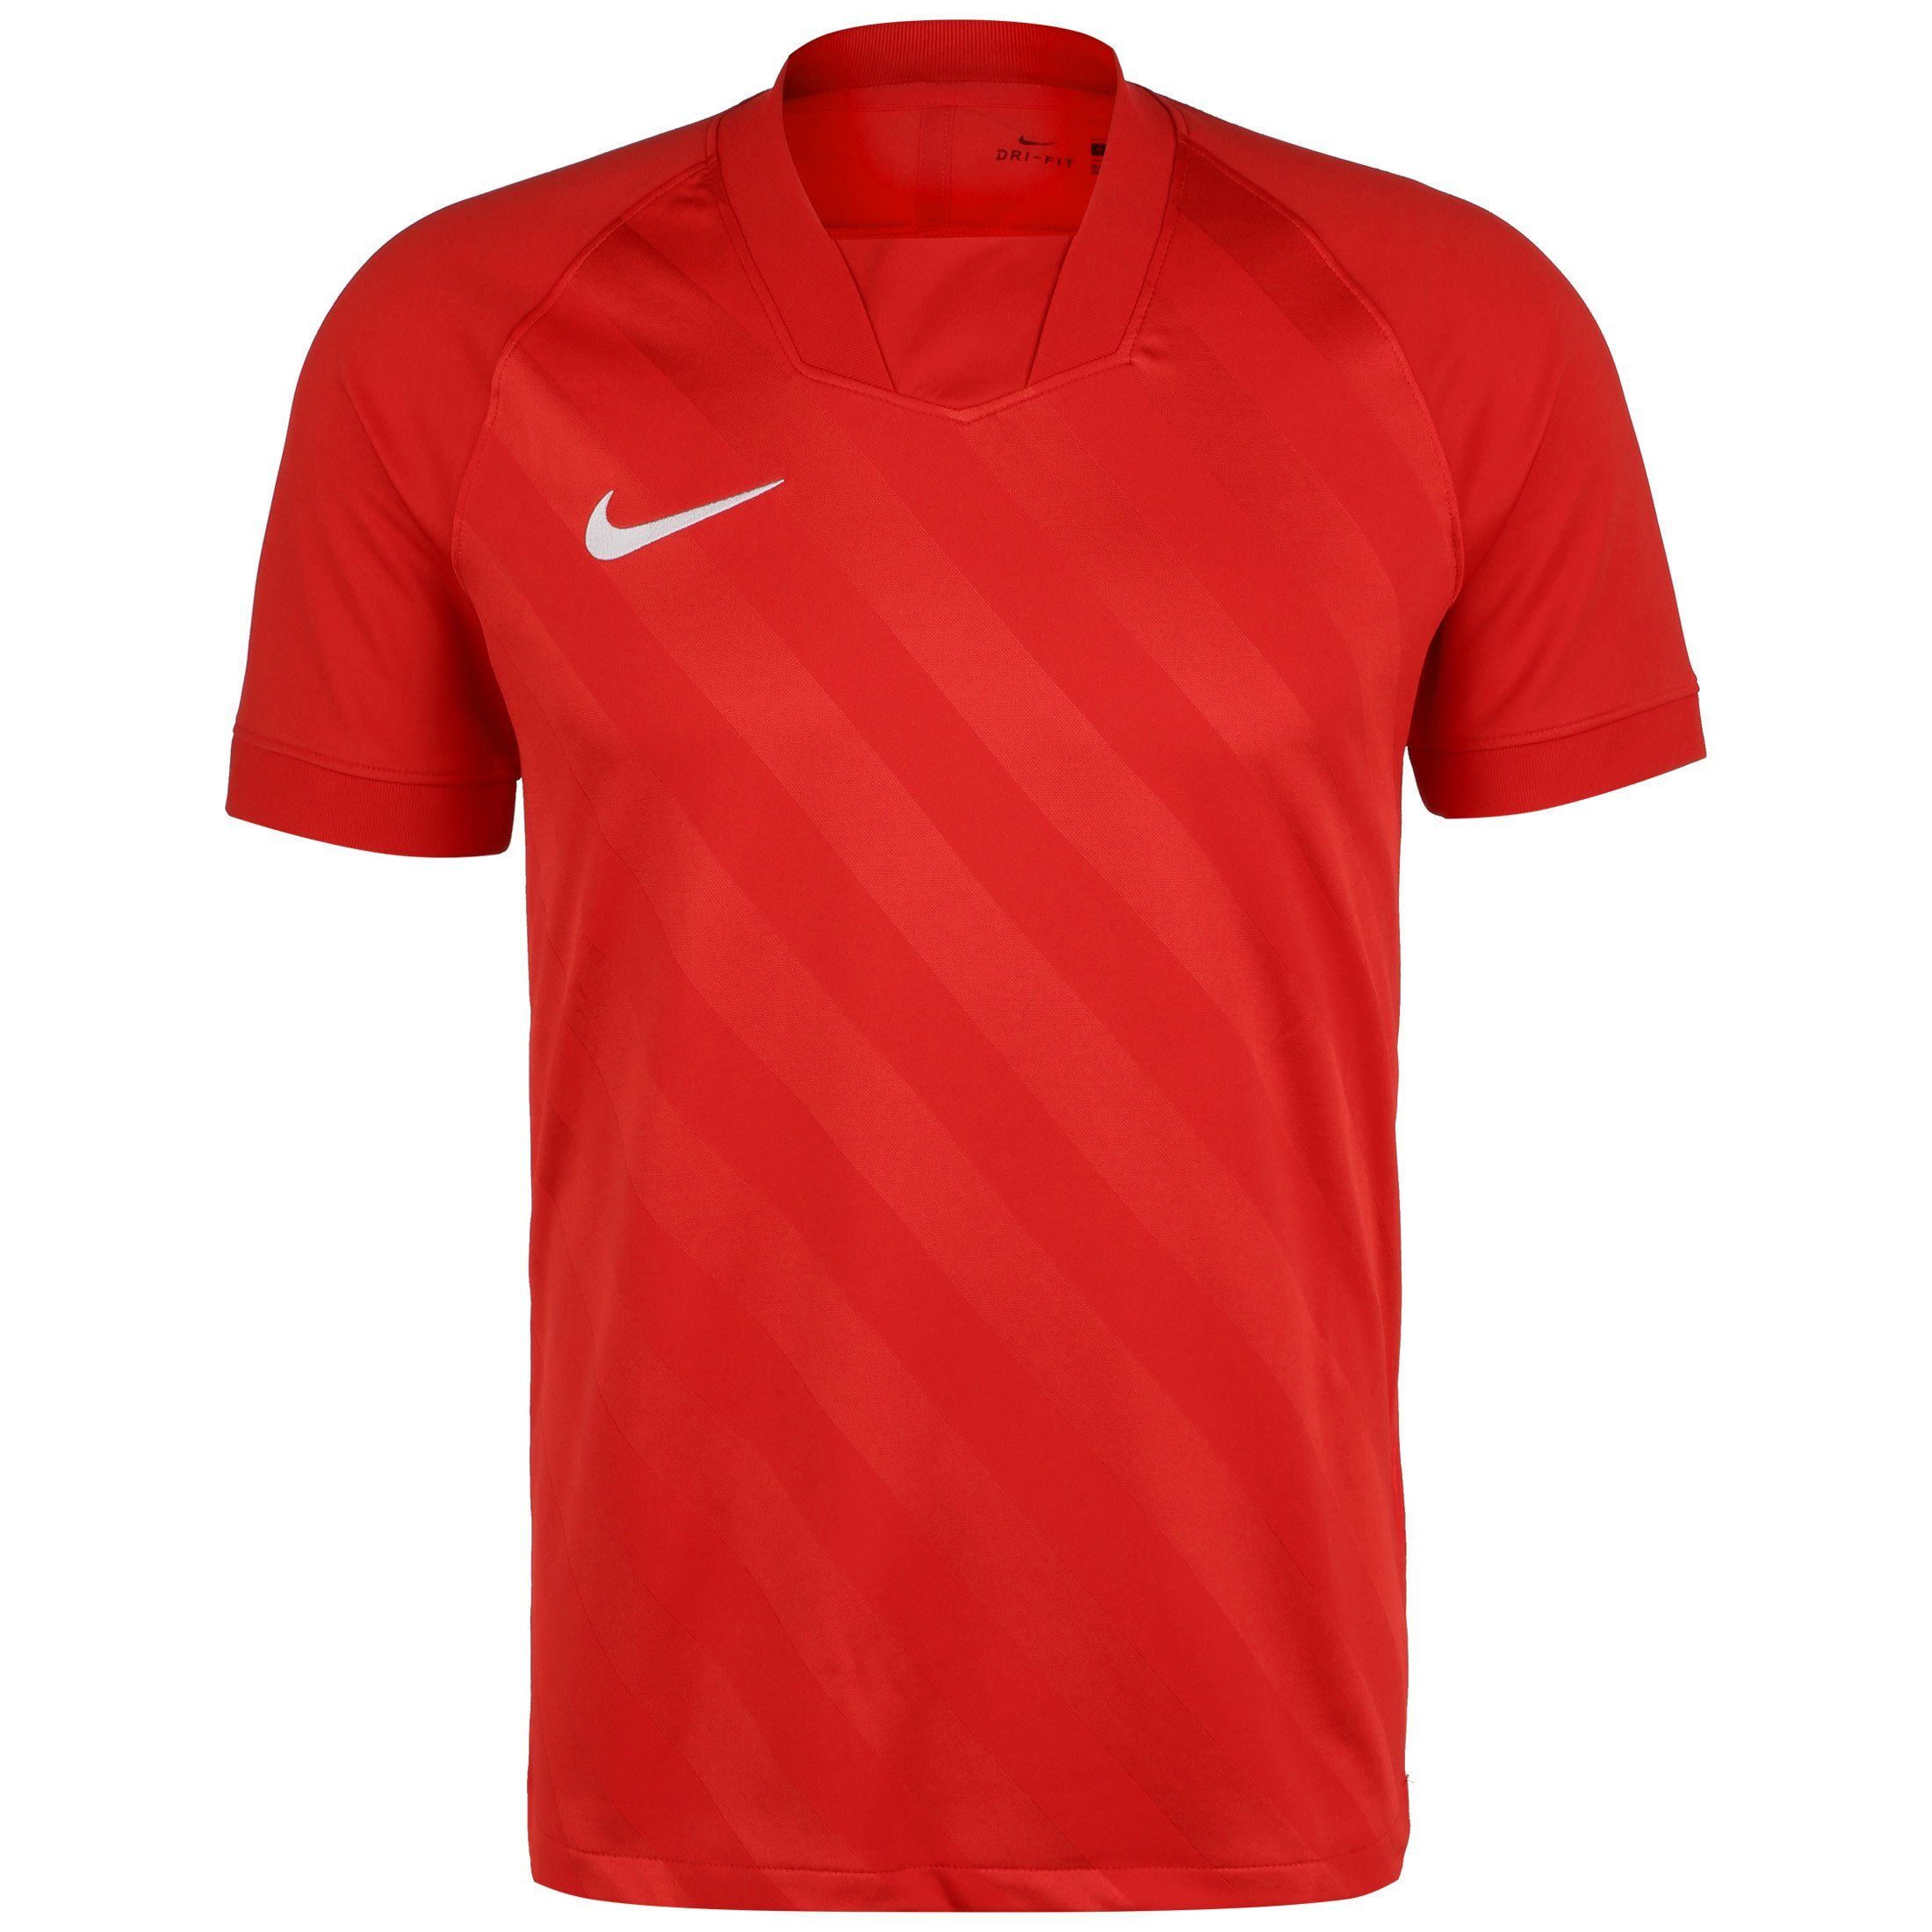 Nike Fußballtrikot »Challenge Iii«, university red / university red / white